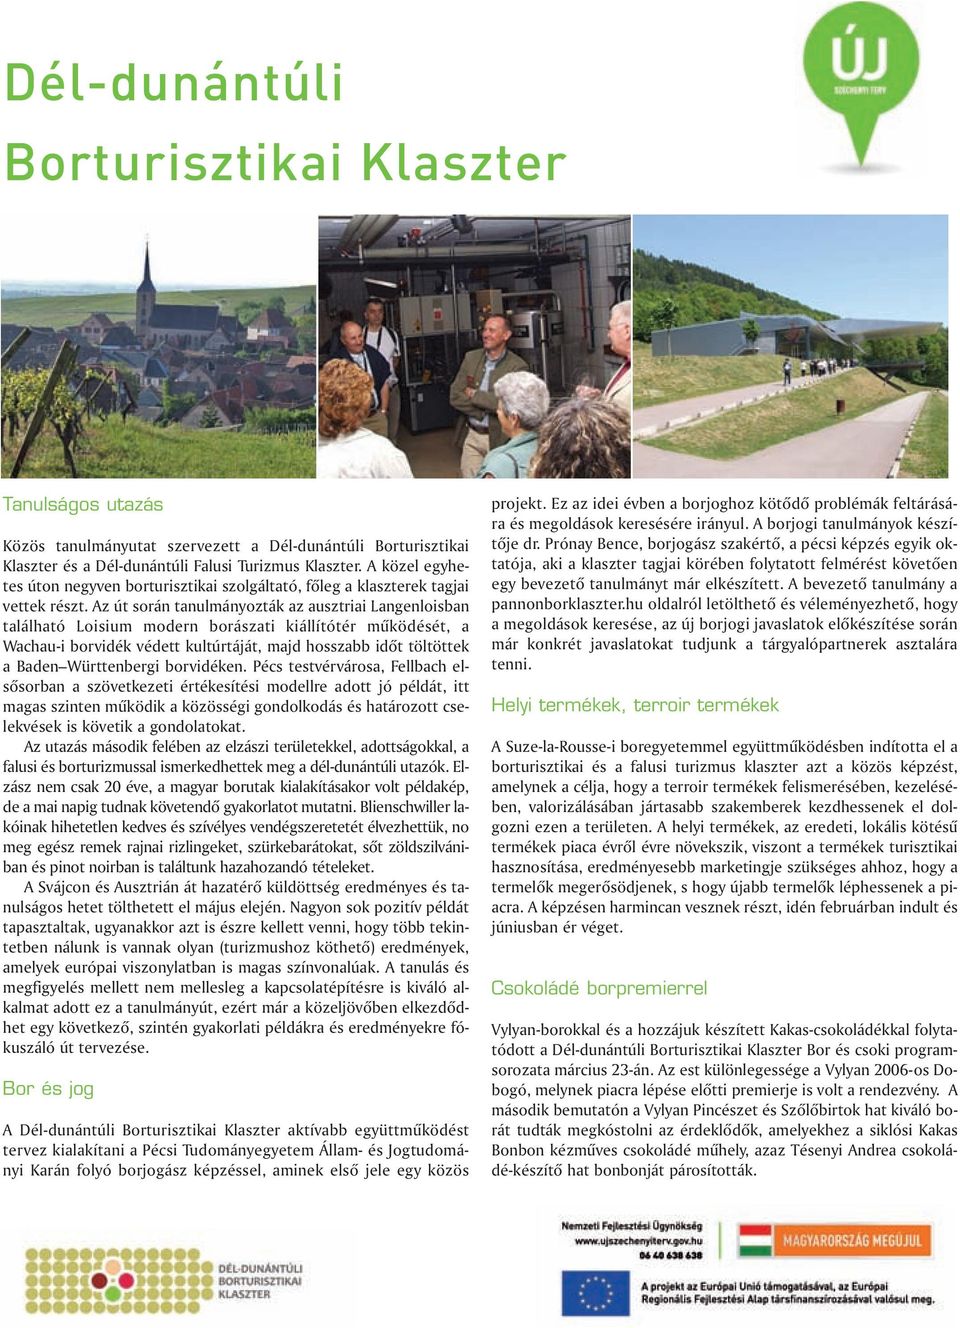 Az út során tanulmányozták az ausztriai Langenloisban található Loisium modern borászati kiállítótér mûködését, a Wachau-i borvidék védett kultúrtáját, majd hosszabb idõt töltöttek a Baden